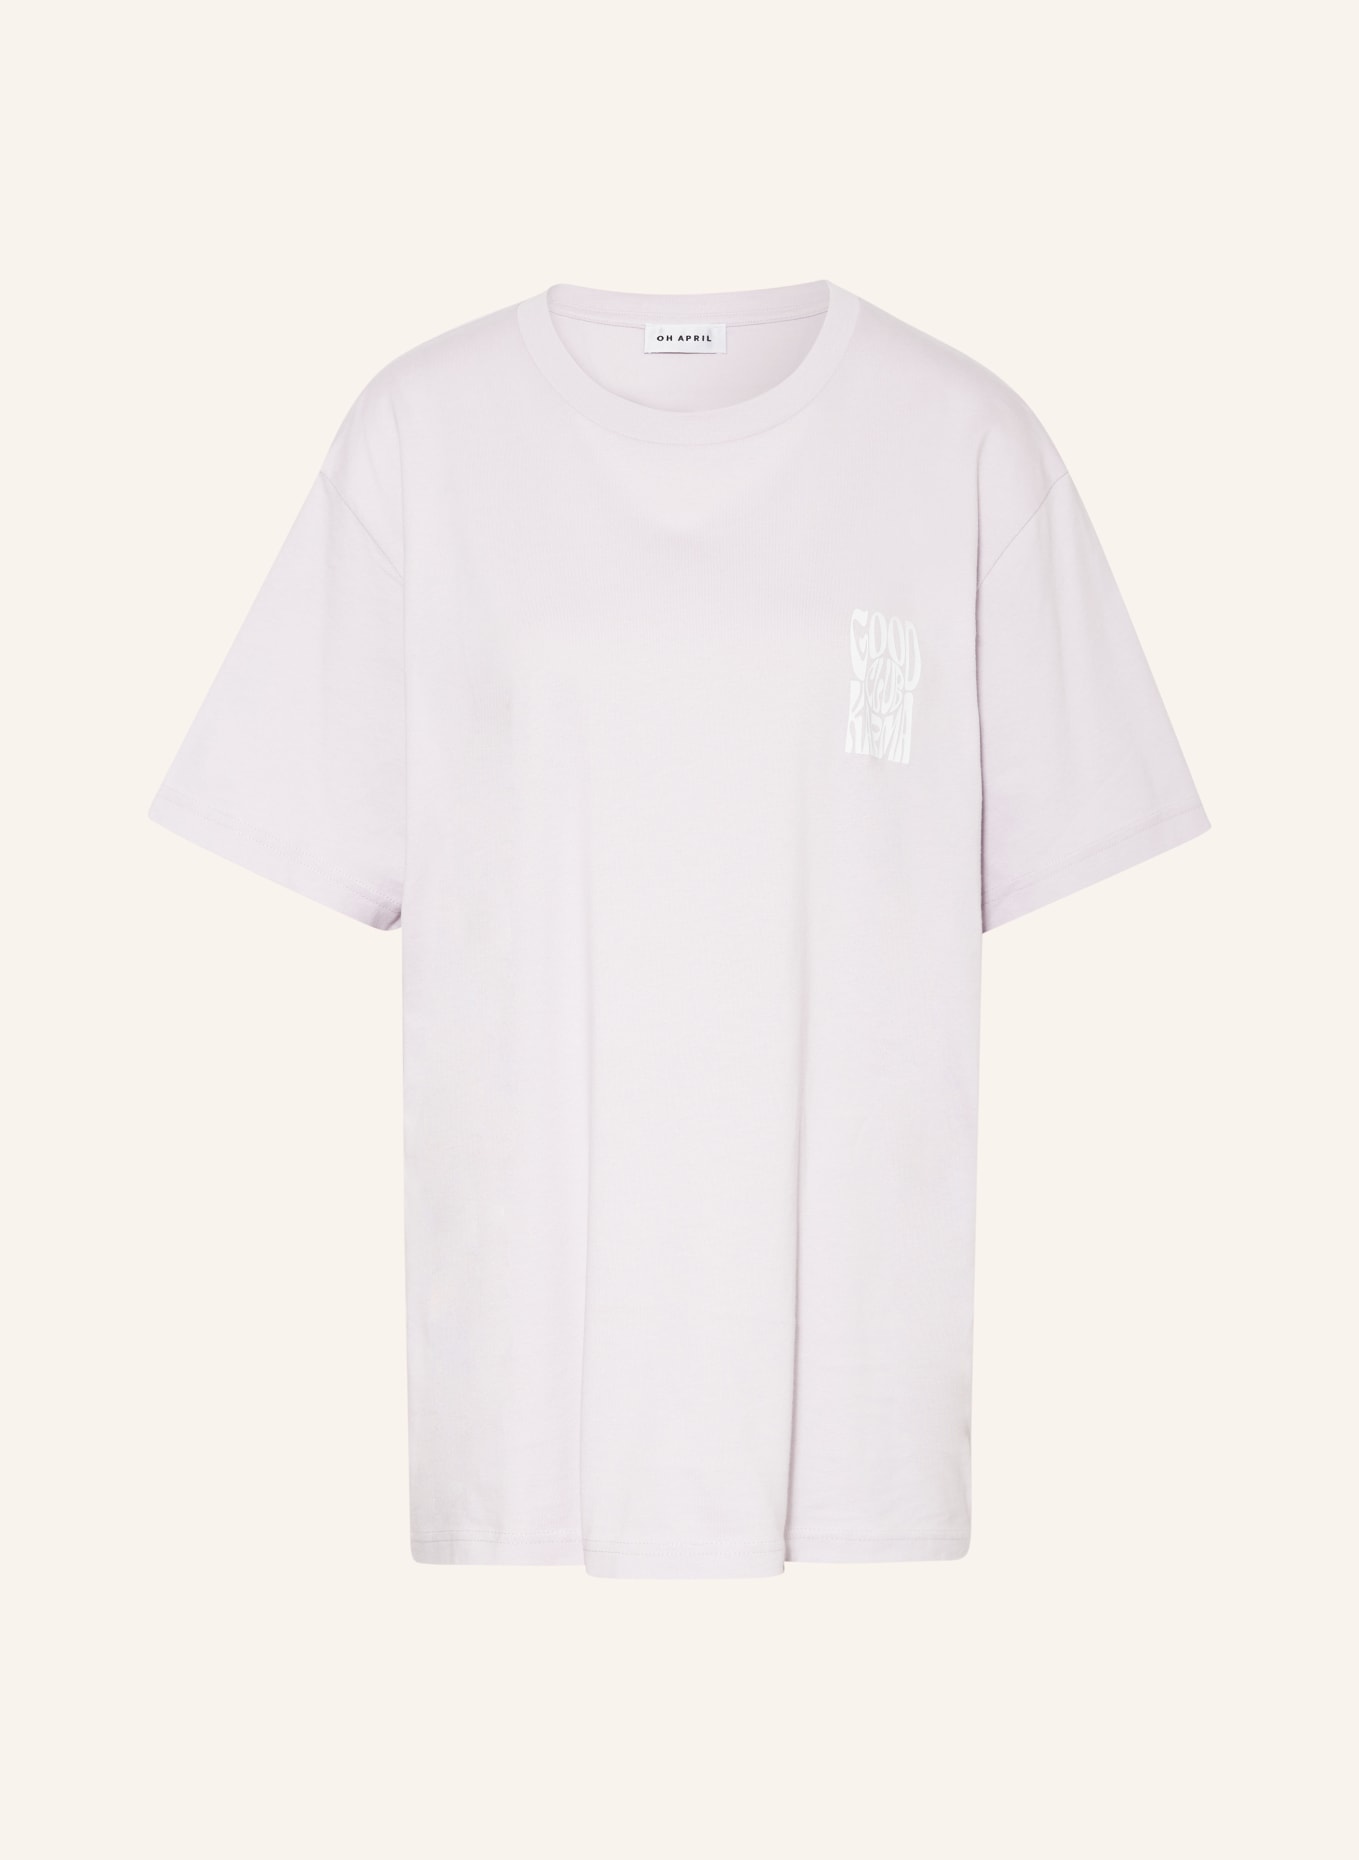 OH APRIL T-Shirt BOYFRIEND, Farbe: HELLLILA (Bild 1)